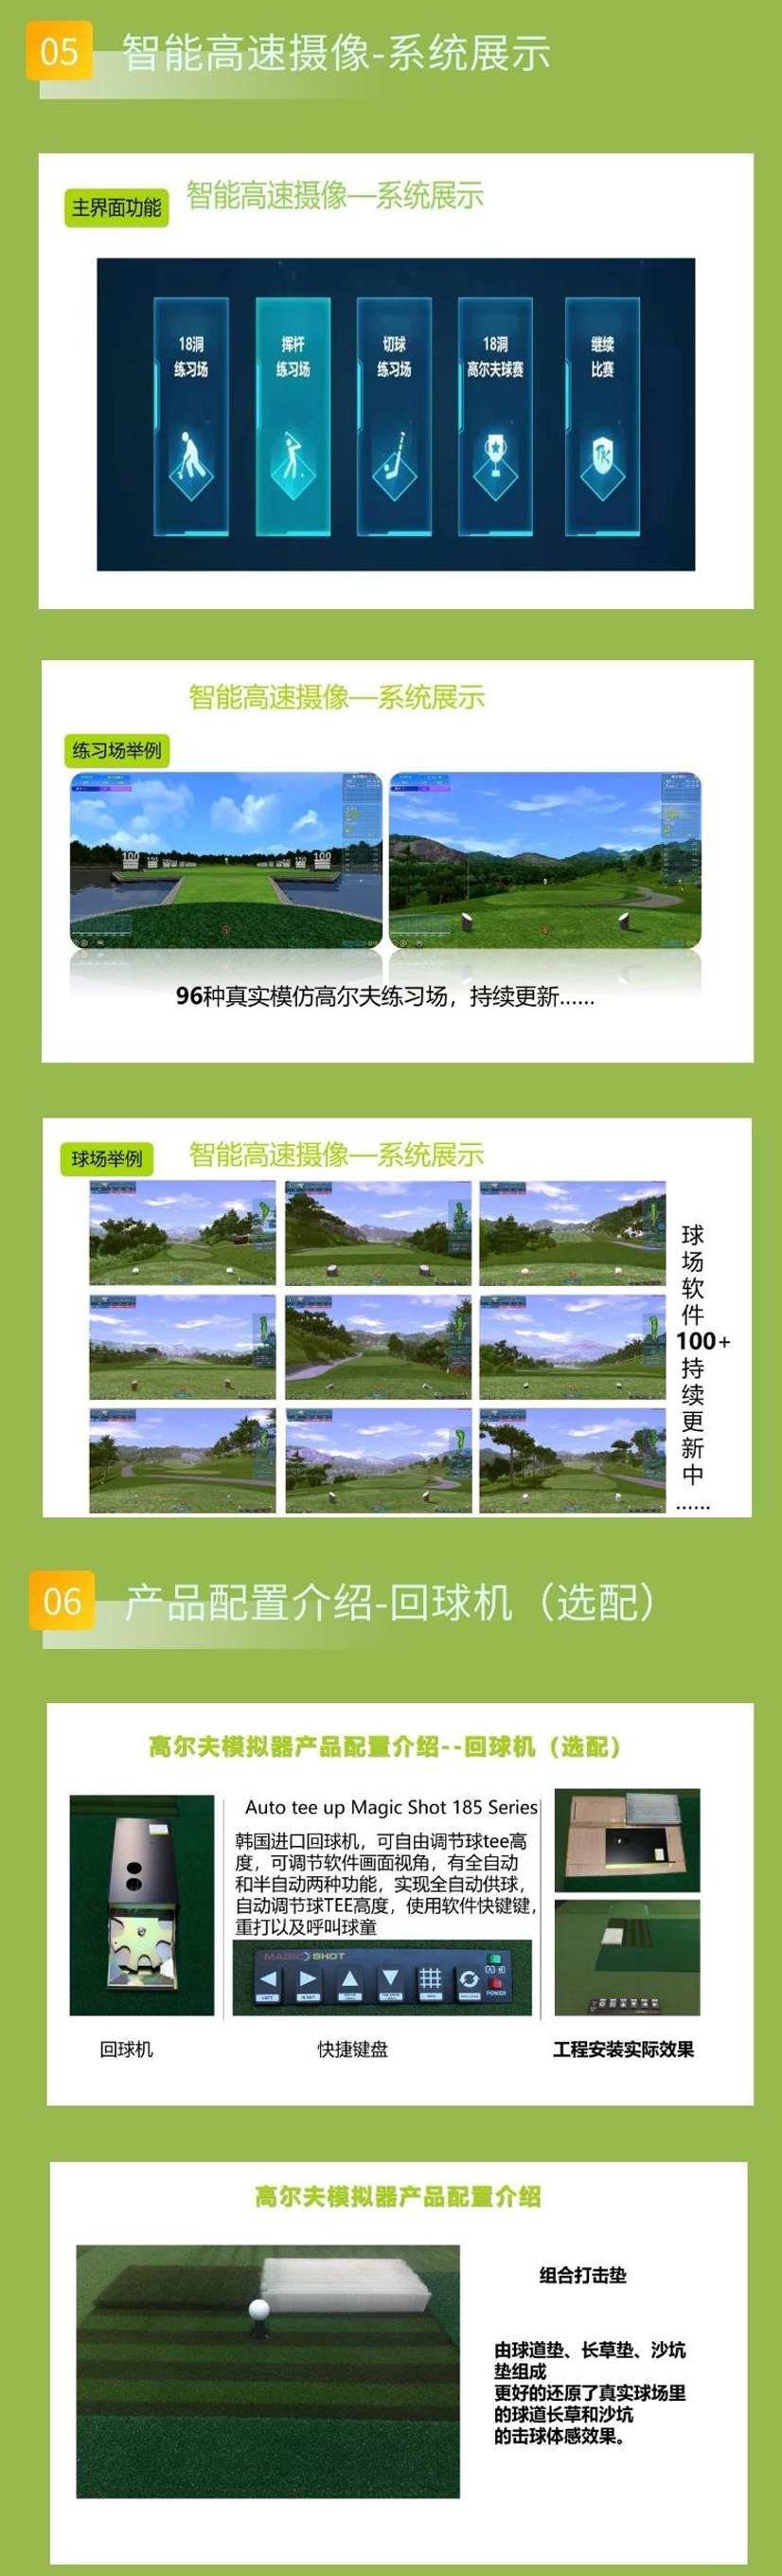 模拟高尔夫系统2.jpg